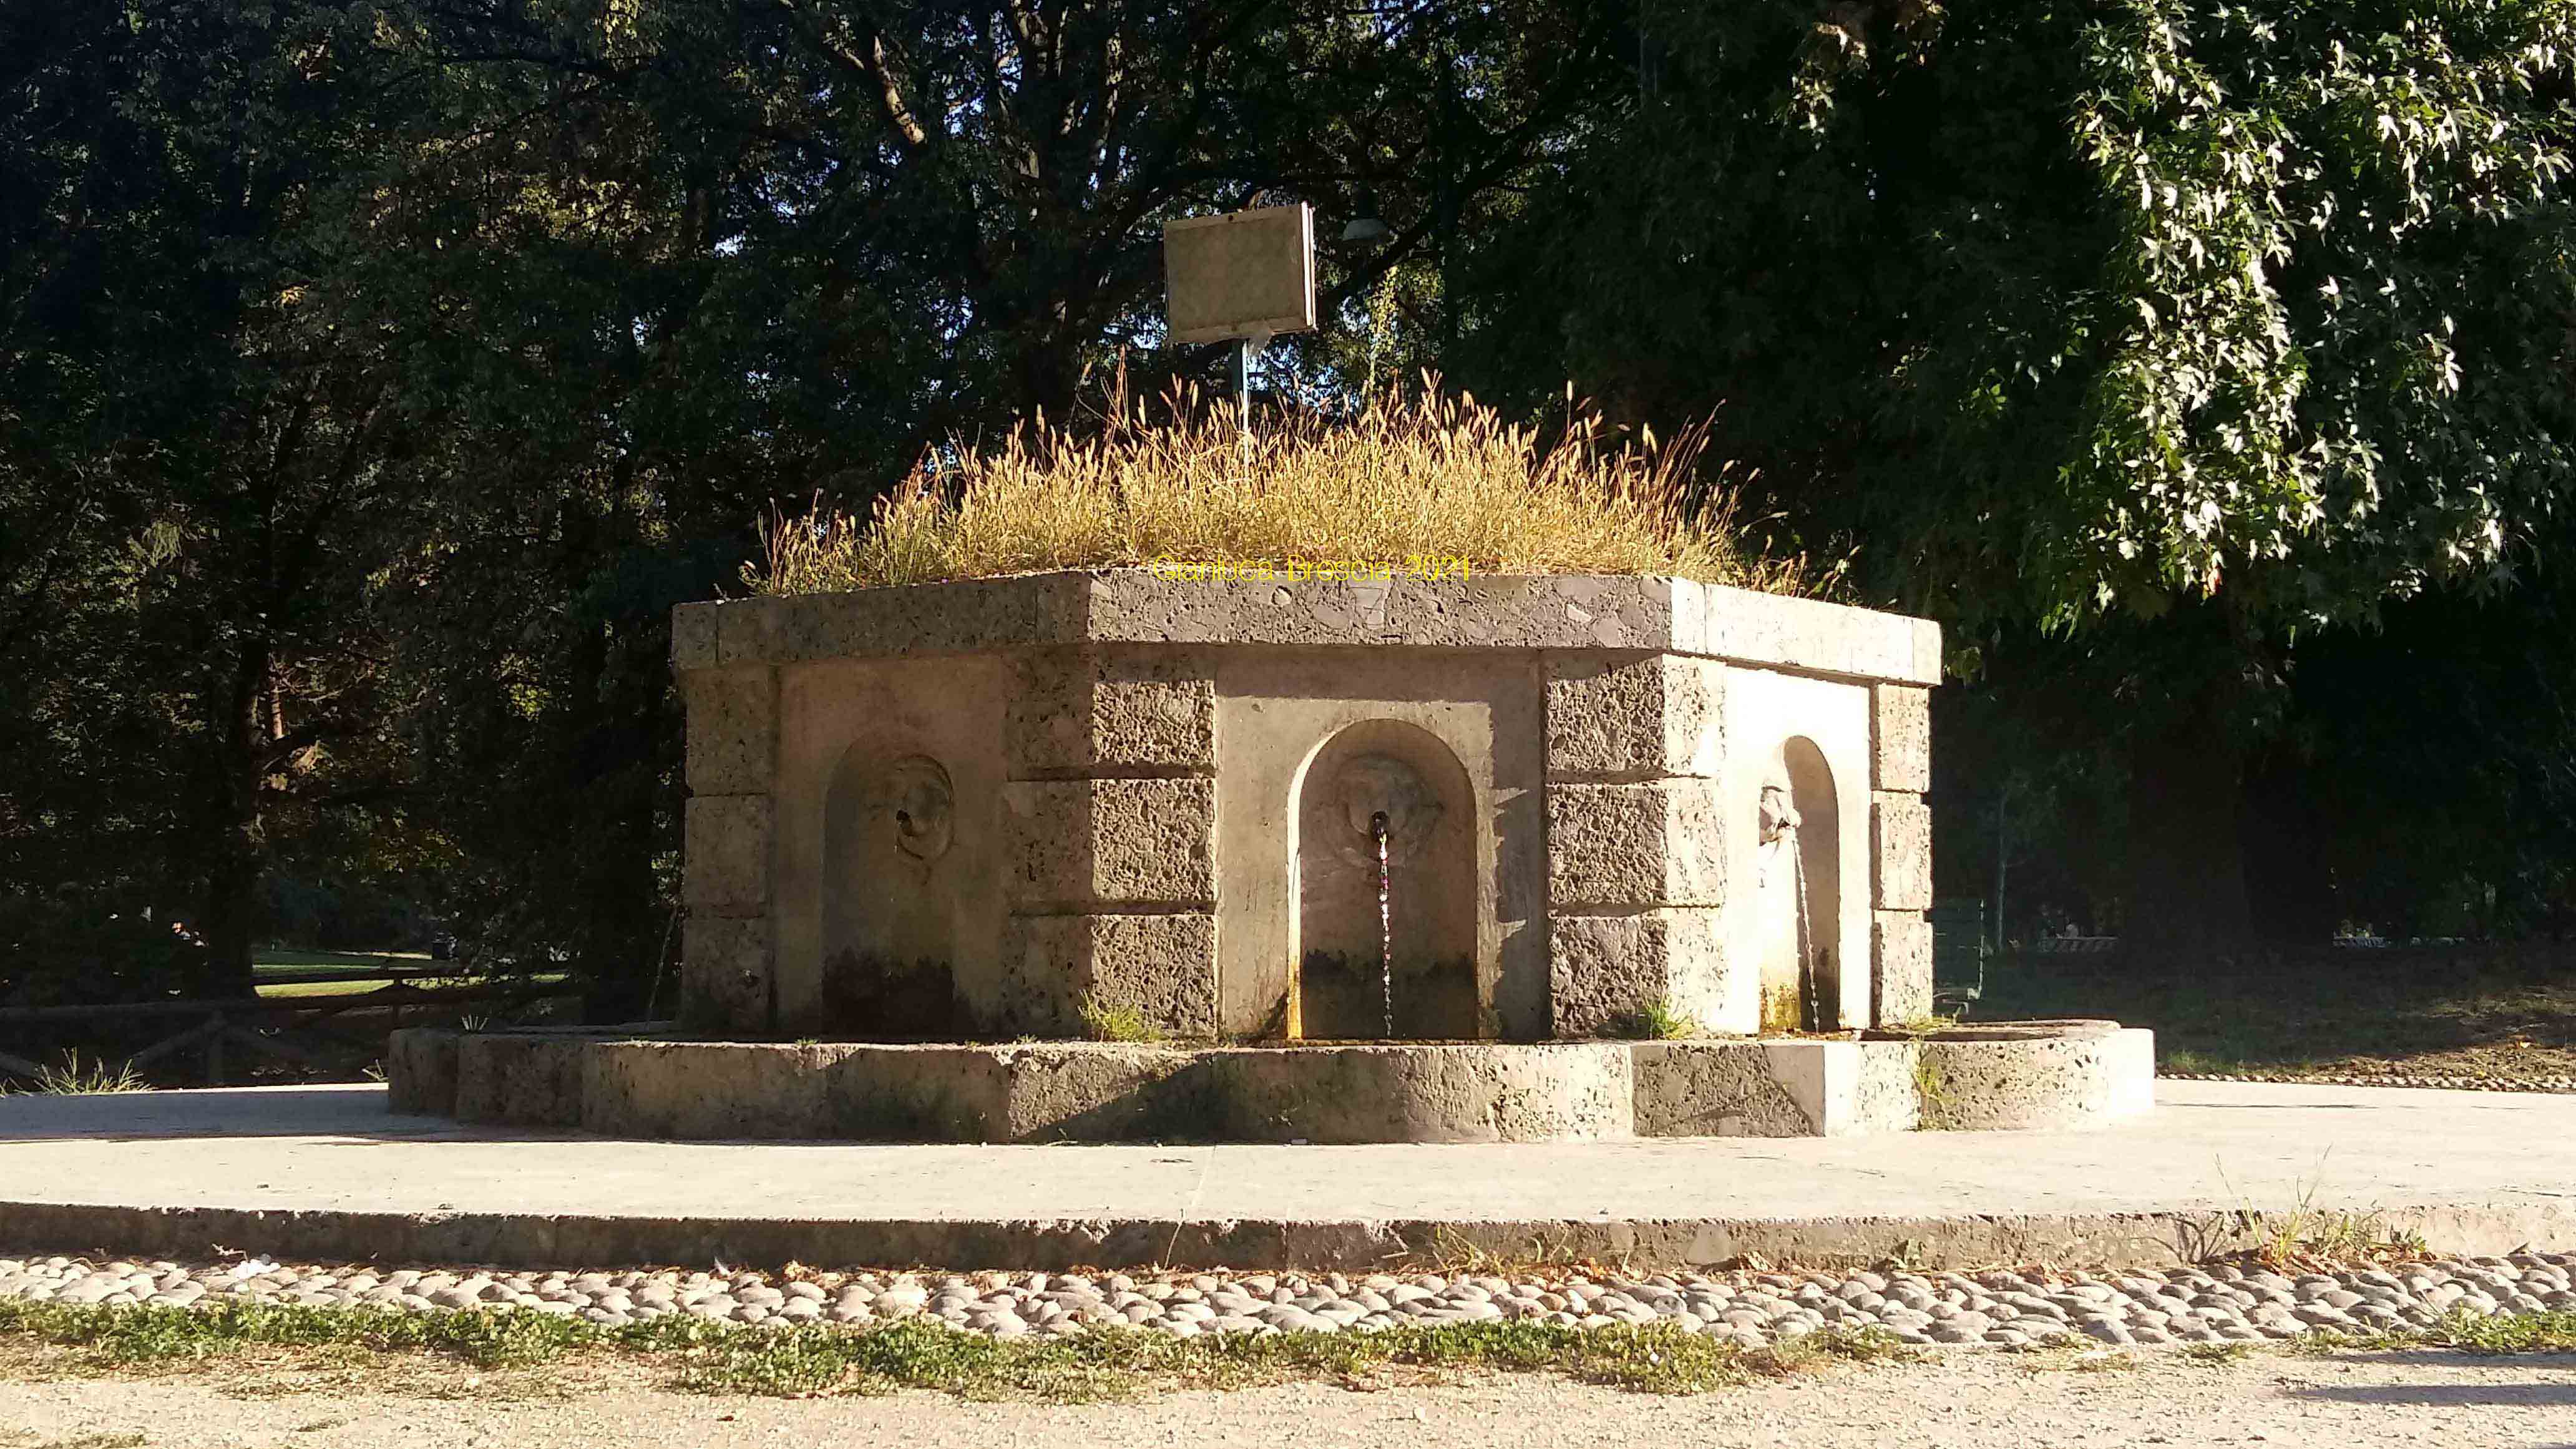 Figura 1: Fontana dell'acqua marcia all'interno del Parco Sempione (Foto personale, 2021)